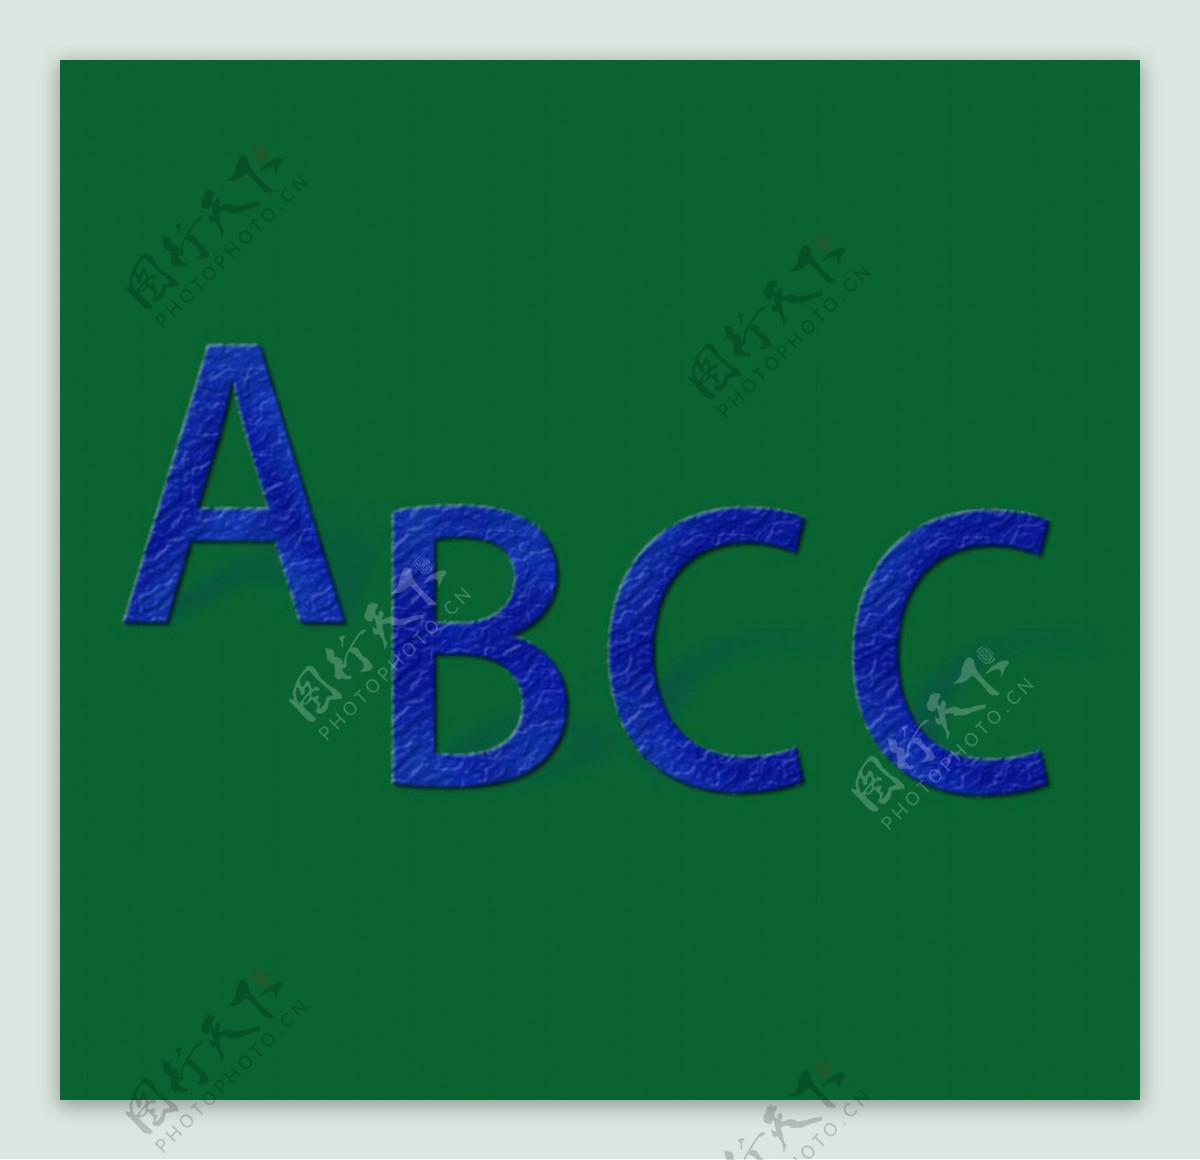 ABCC字母效果字